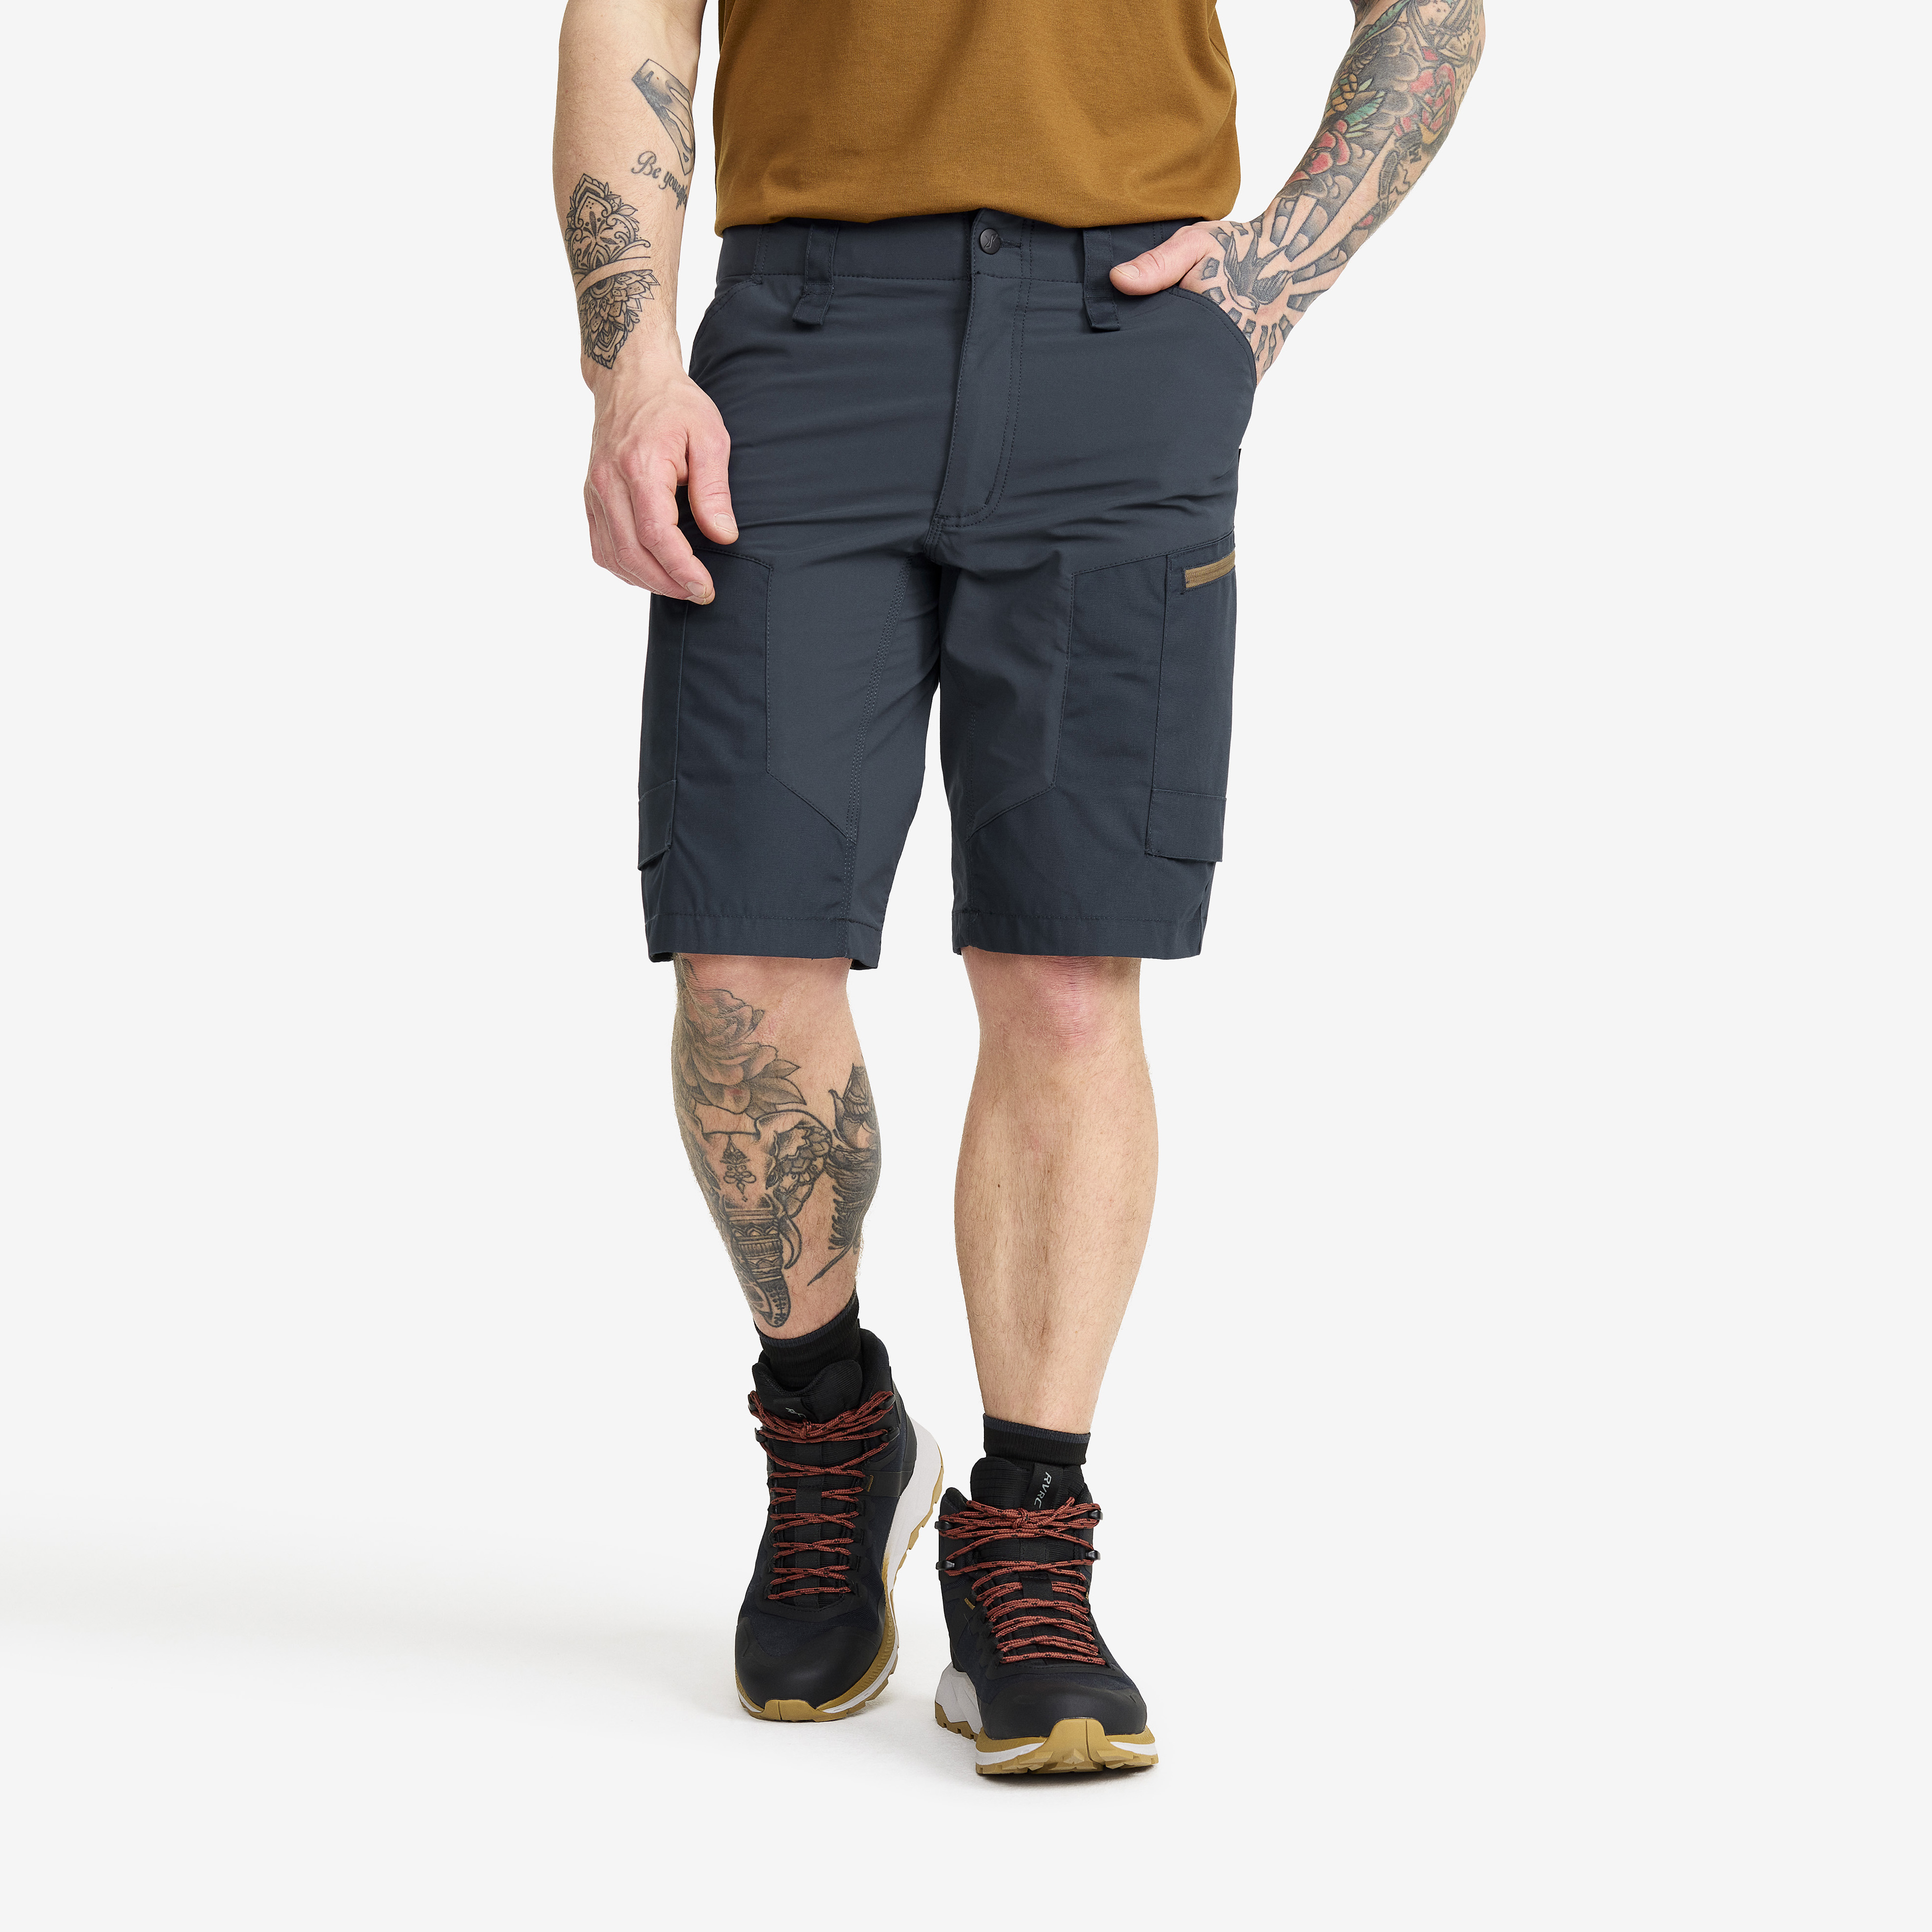 RVRC GP Shorts – Herr – Blueberry Storlek:3XL – Byxor > Shorts